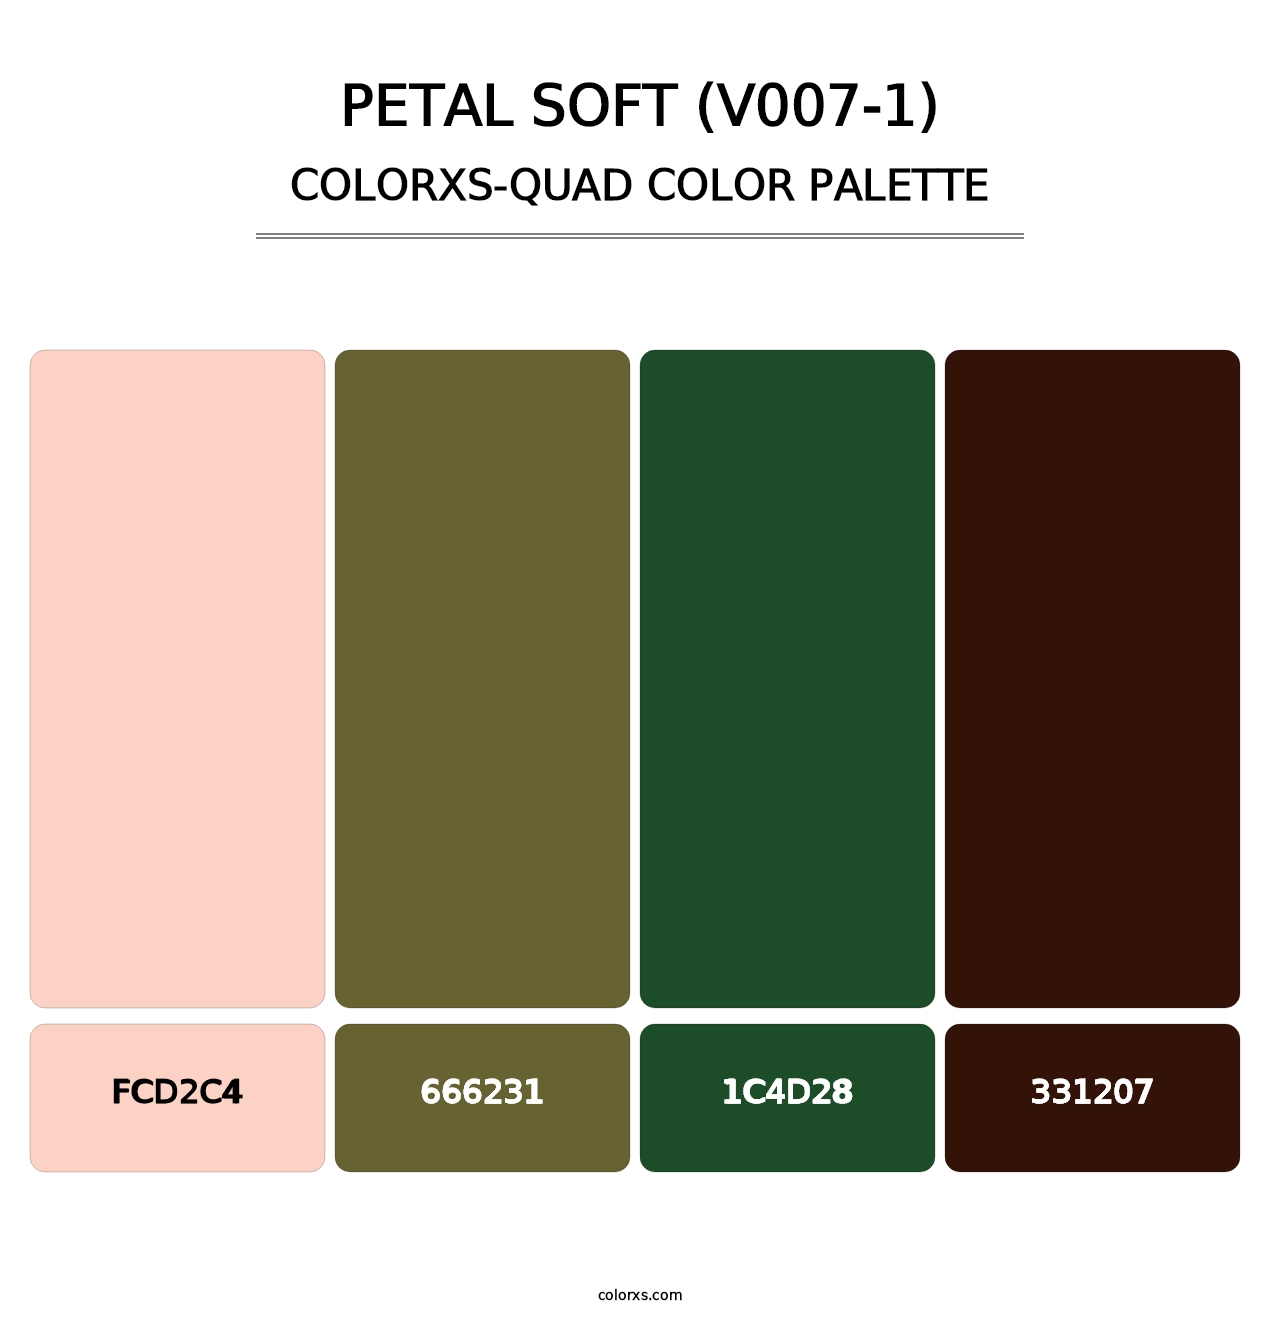 Petal Soft (V007-1) - Colorxs Quad Palette